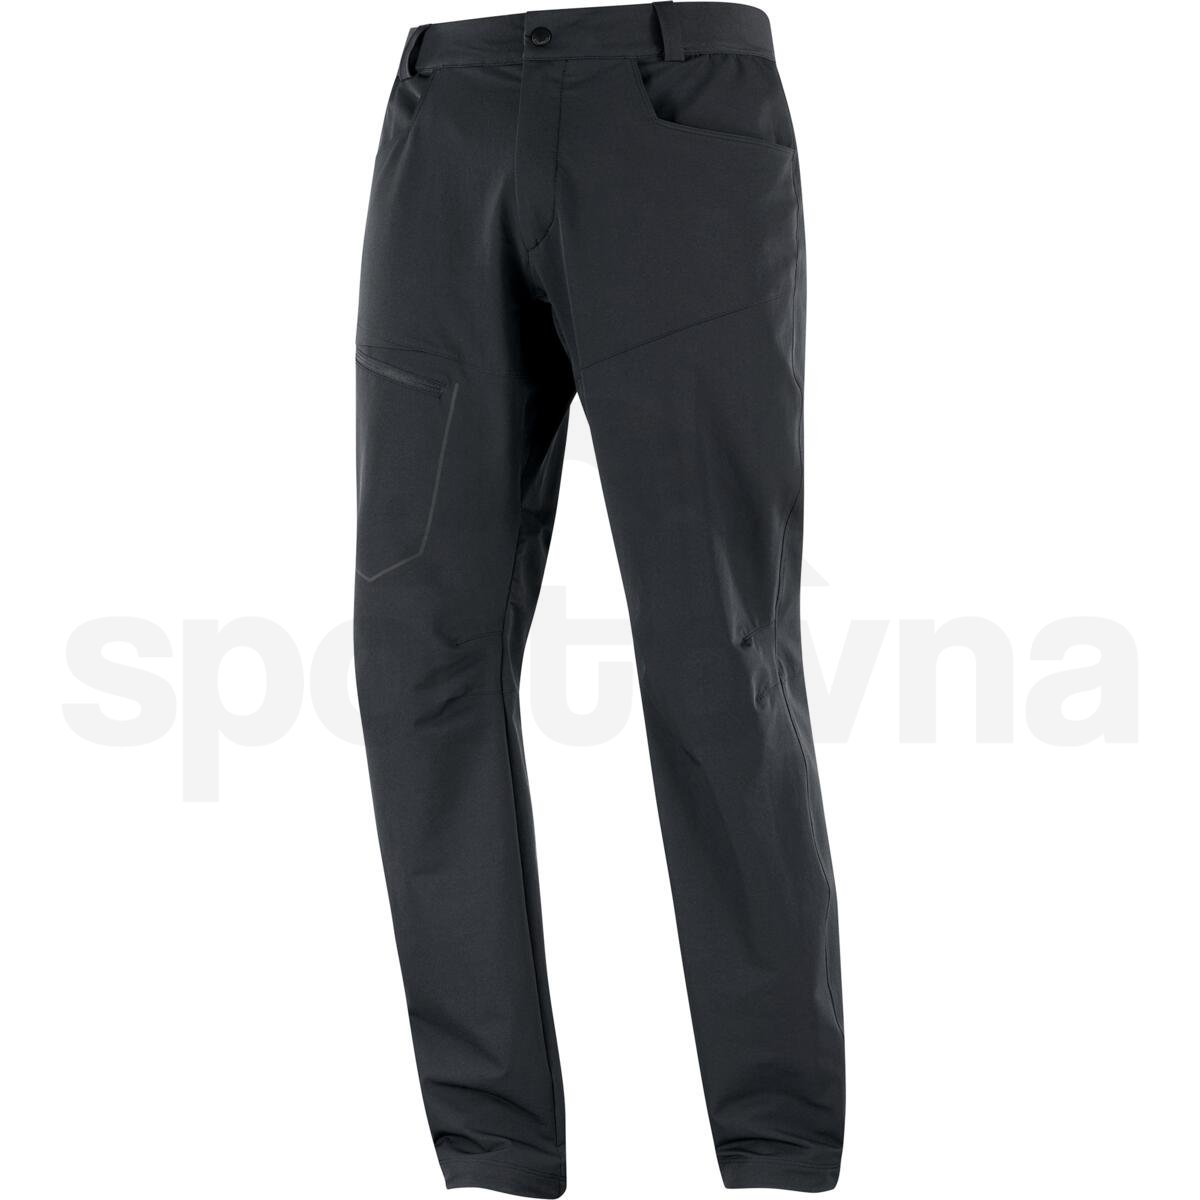 Kalhoty Salomon Wayfarer Warm Pants M - černá (zkrácená délka)